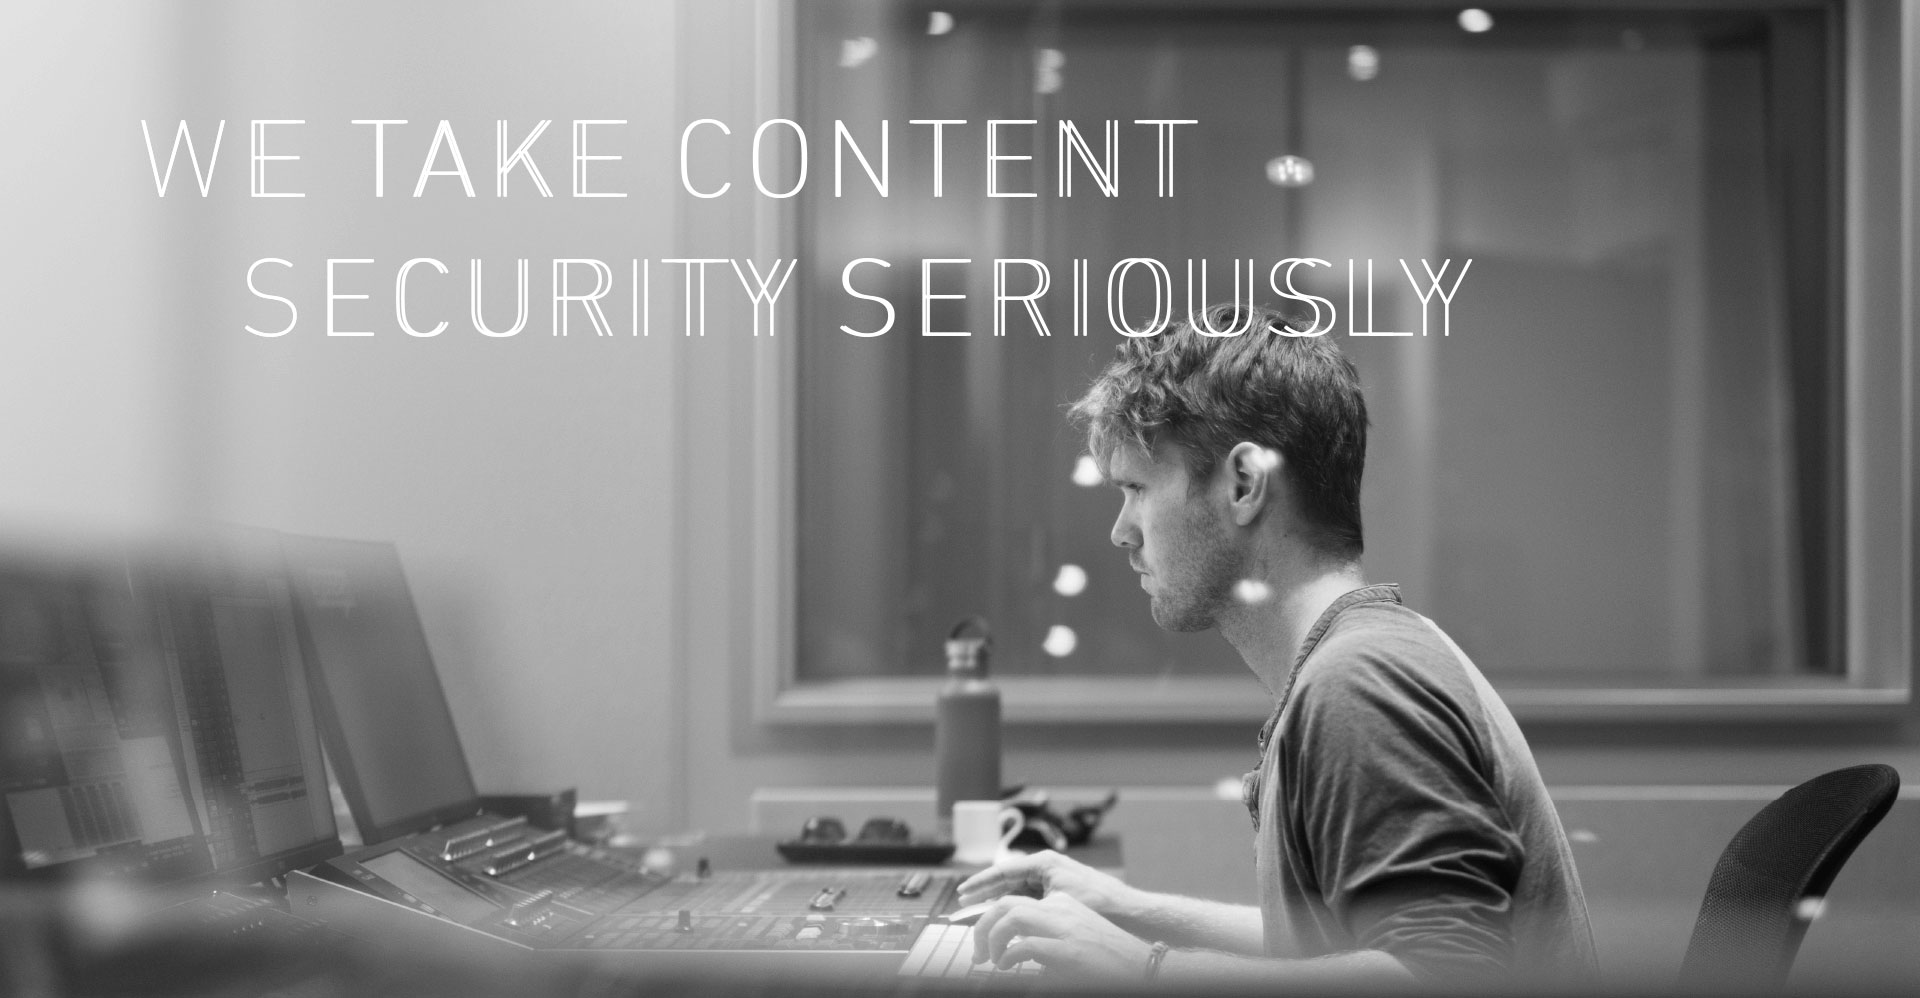 Speeech Werbespruch we take content security seriously auf schwarzweiß Bild von einem Mann am Mischpult